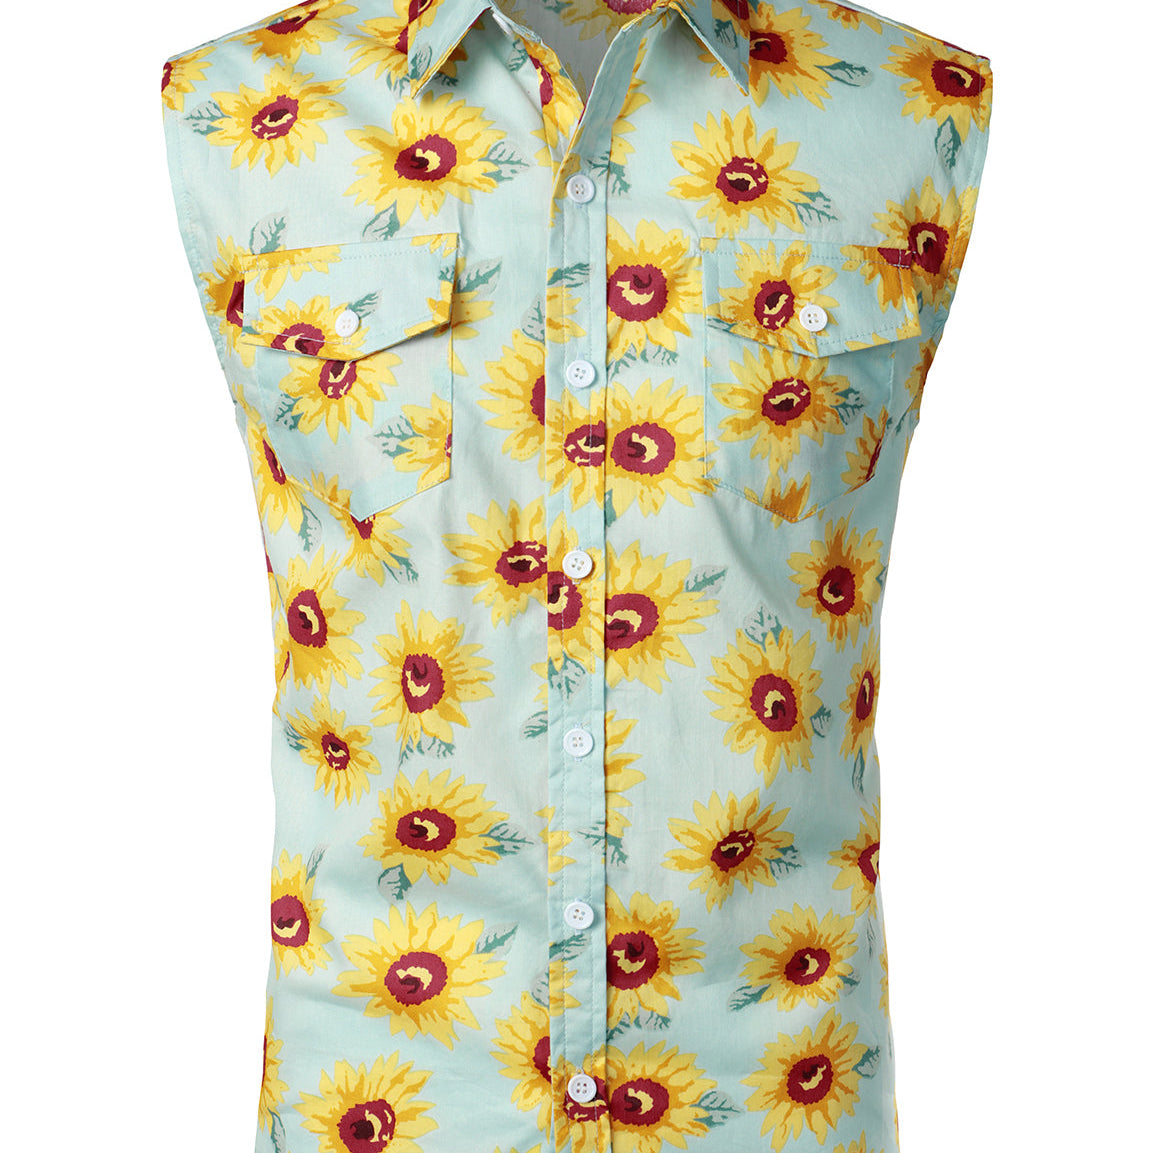 Men's Cotton Sunflower Pocket Light Blue Hawaiian Sleeveless Shirt